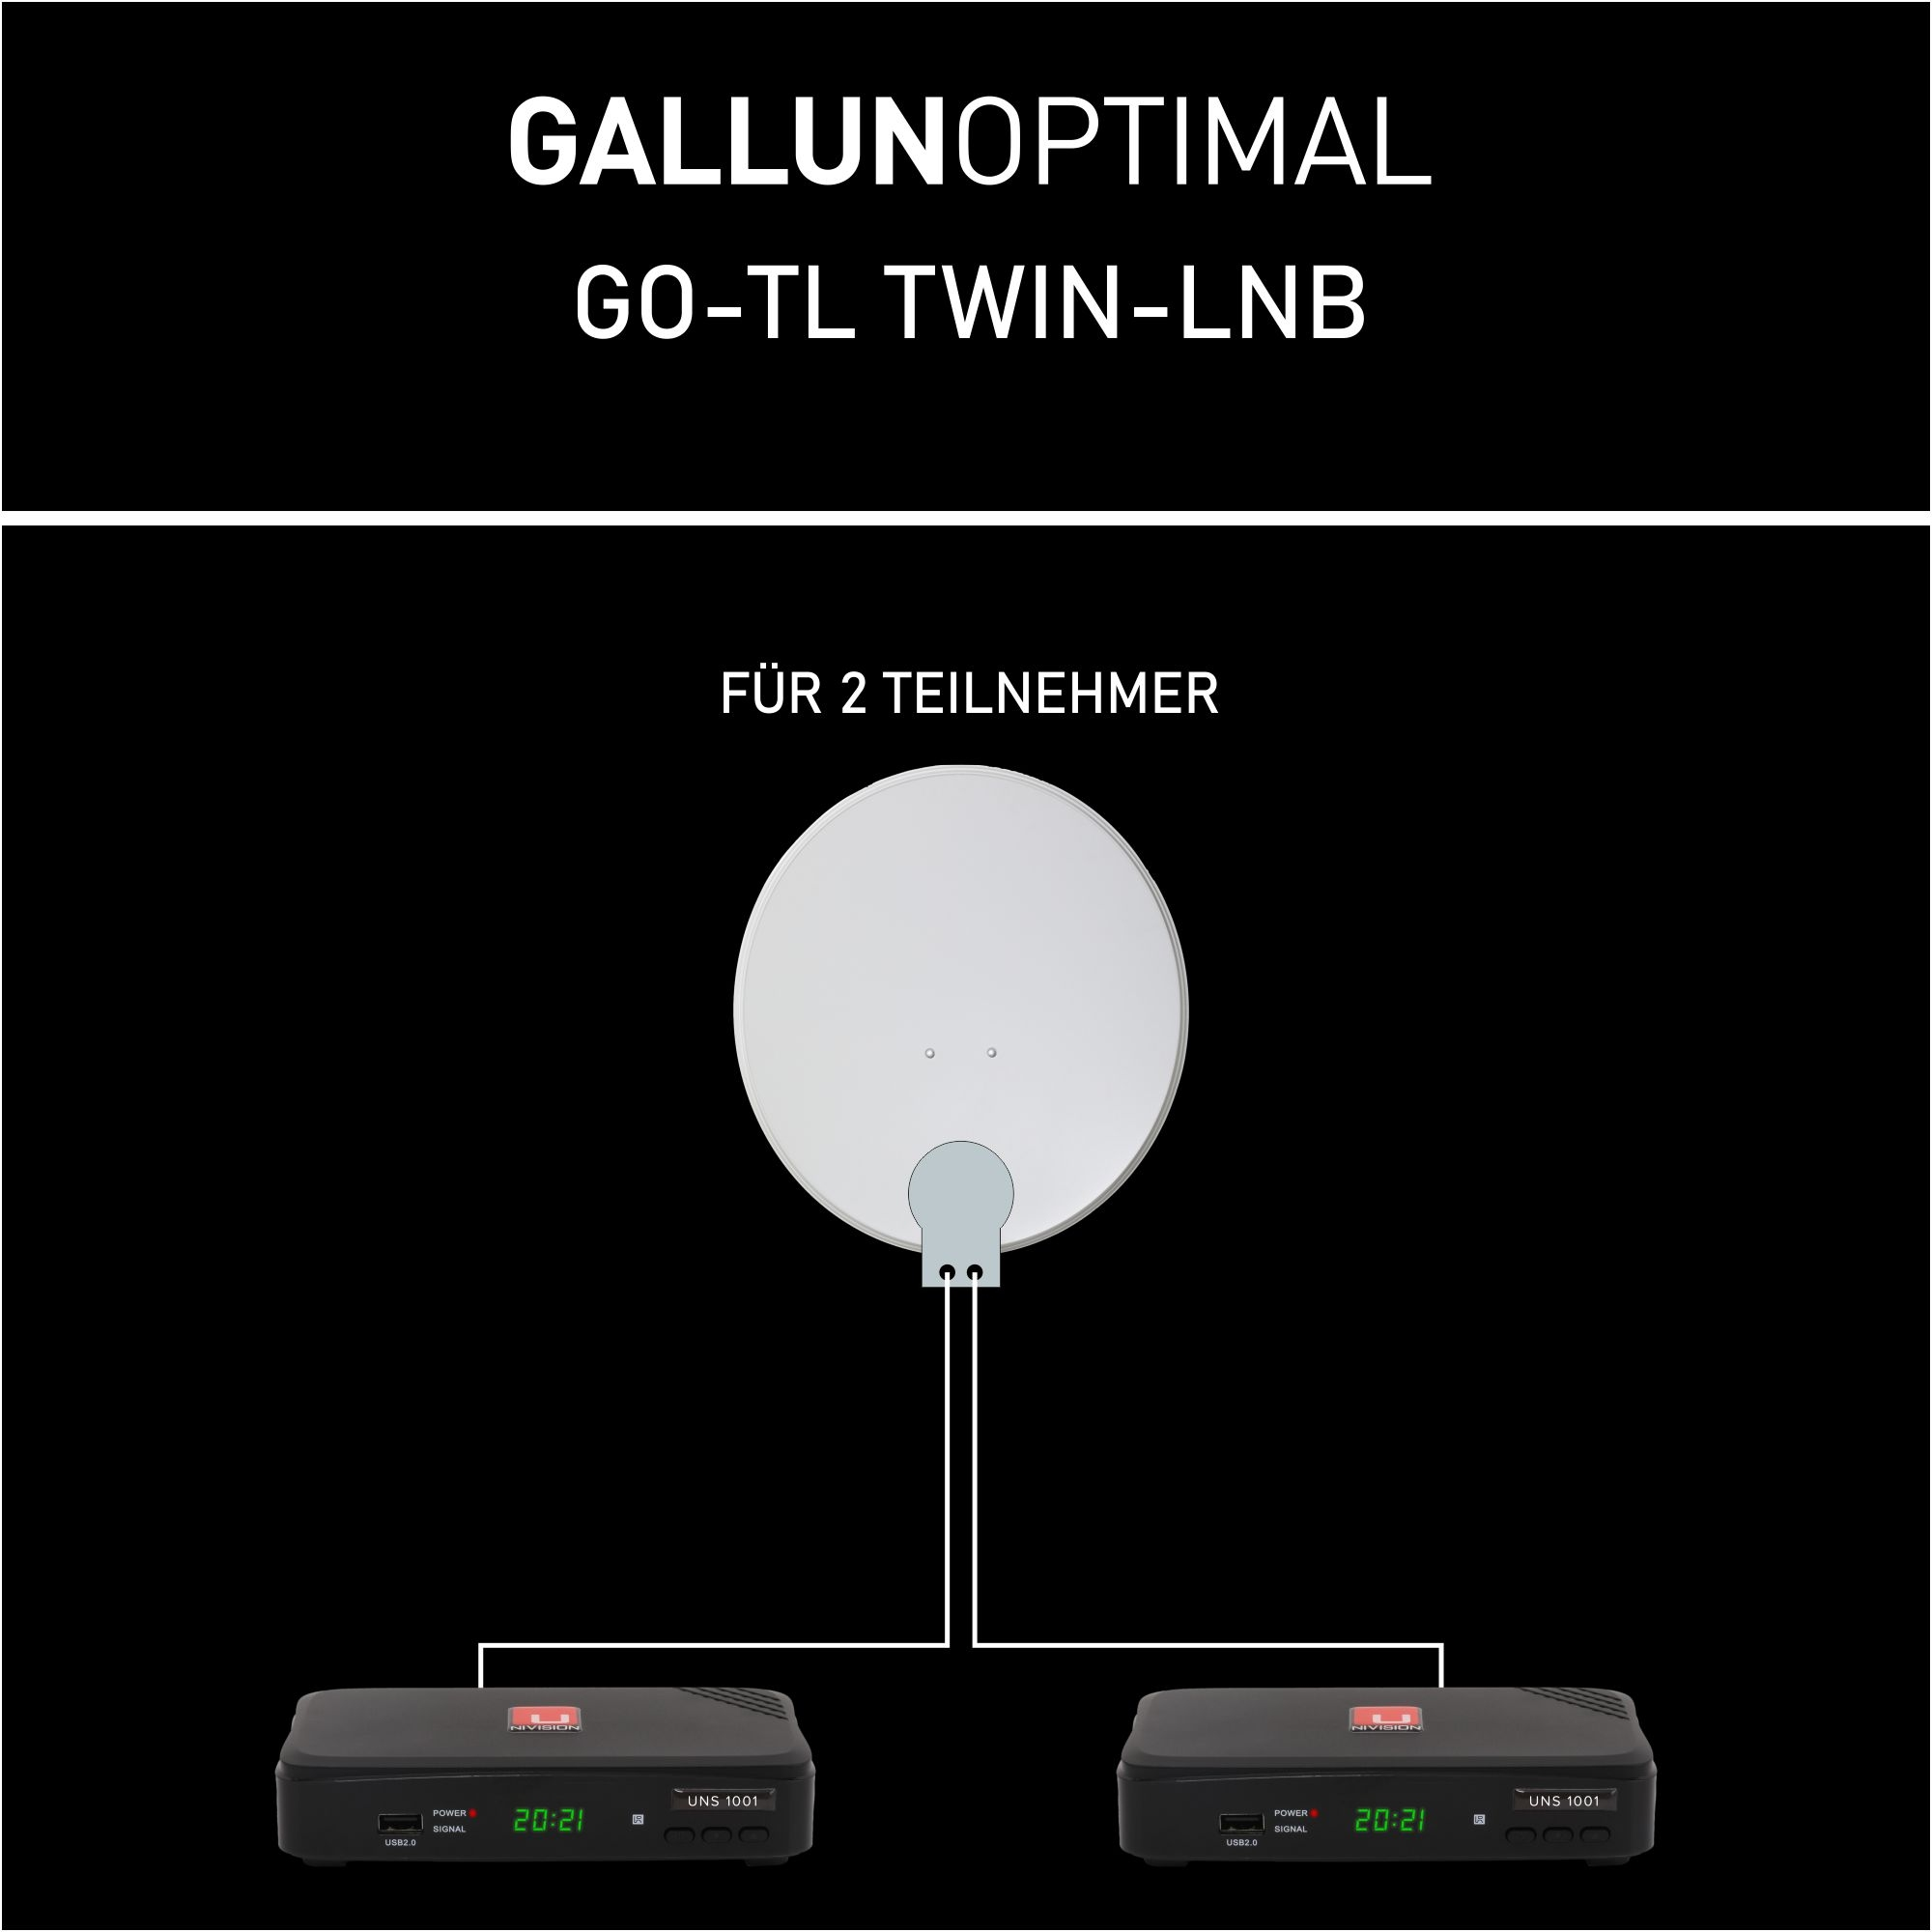 Twin-LNB GALLUNOPTIMAL Twin LNB